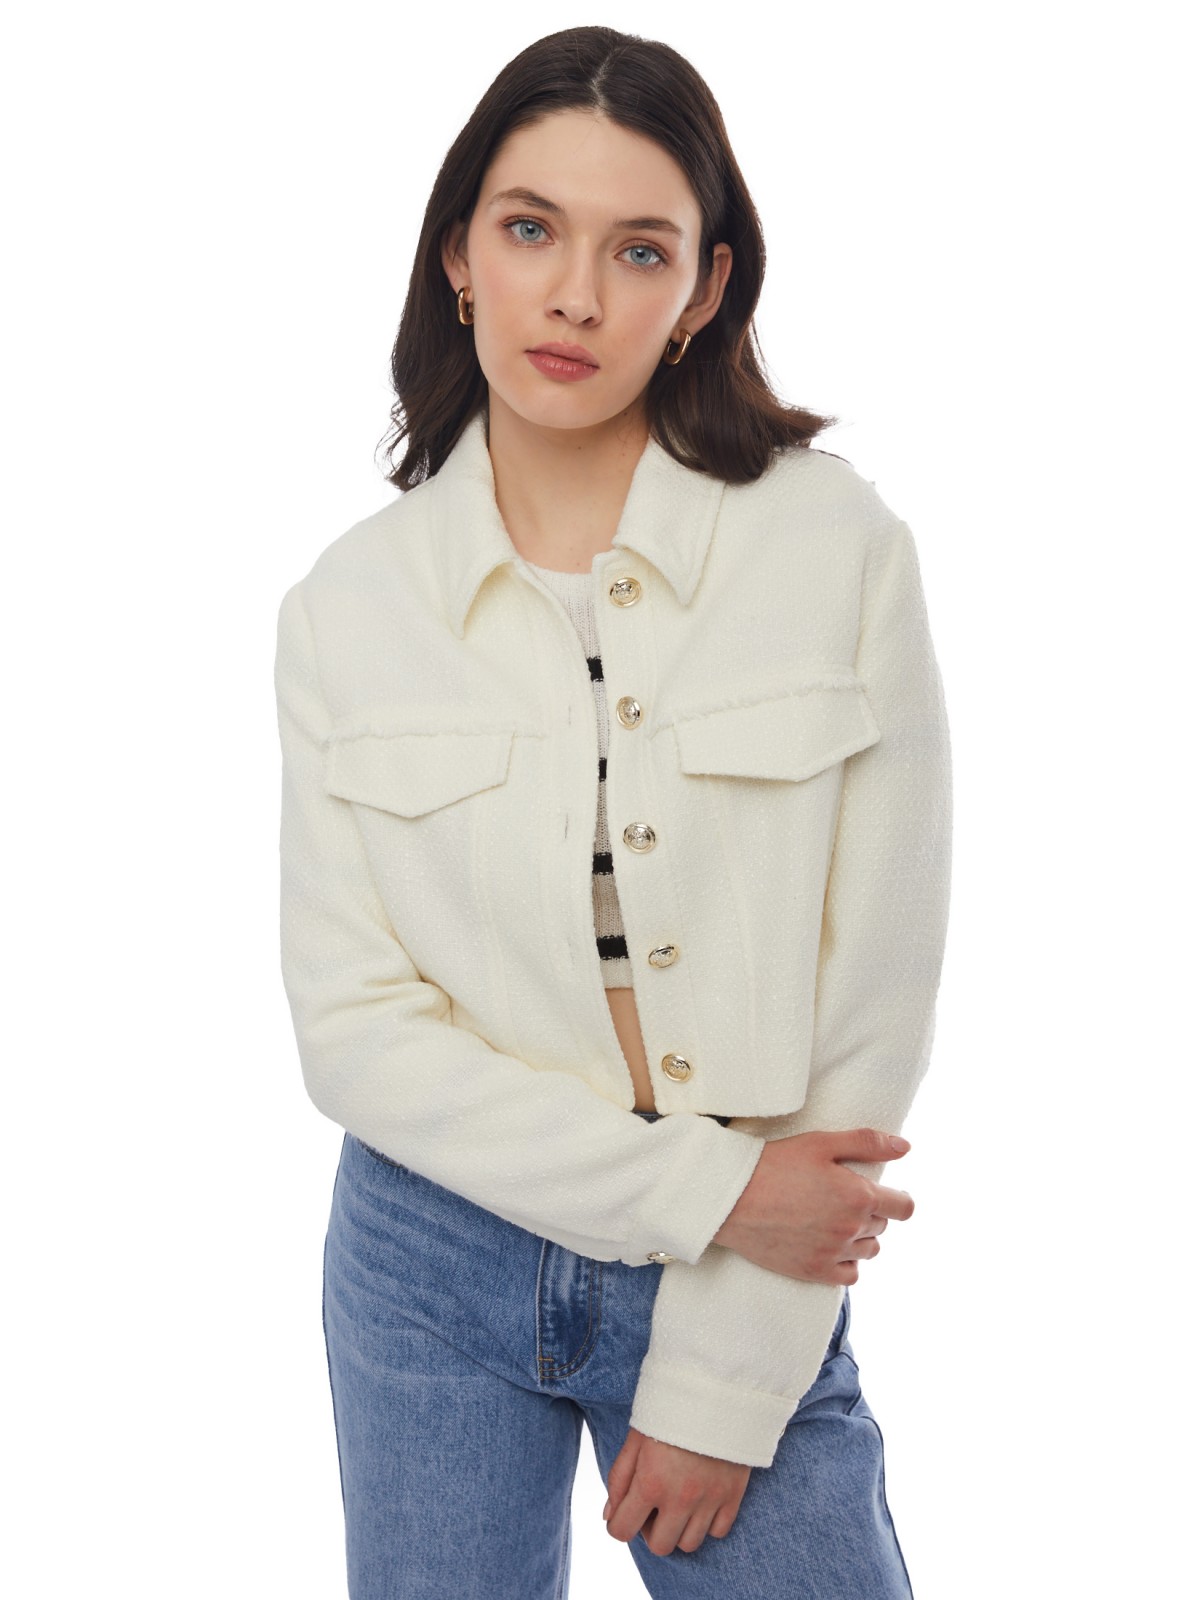 Укороченная куртка-жакет из жаккардовой ткани zolla 024135470061, цвет молоко, размер XL